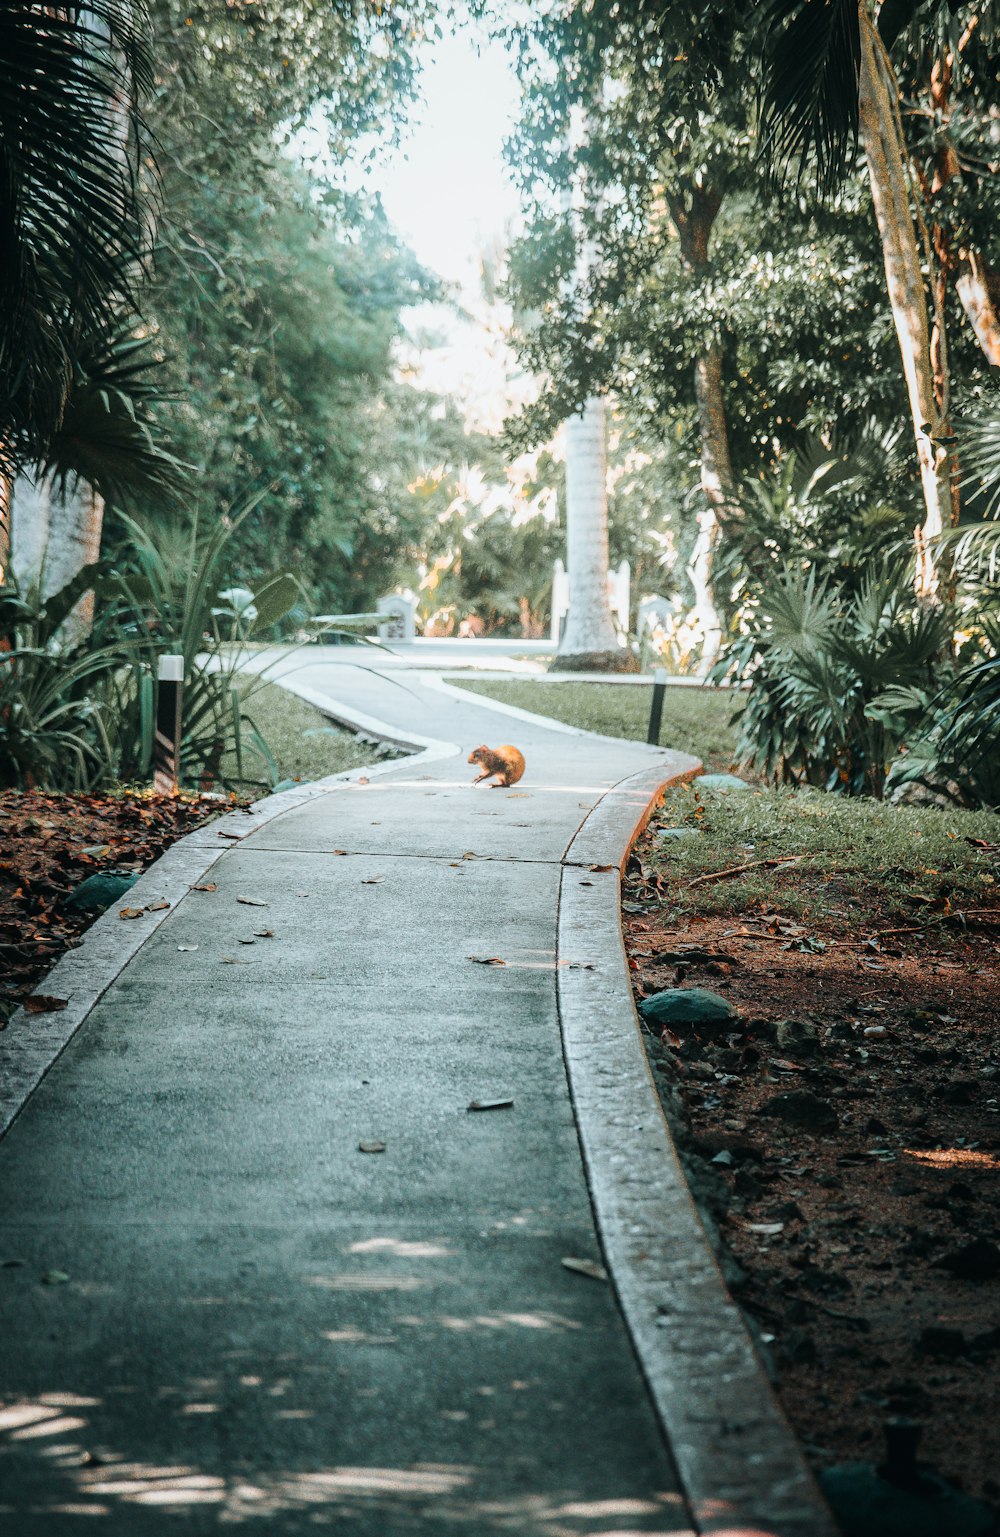 a cat walking down a sidewalk in a park